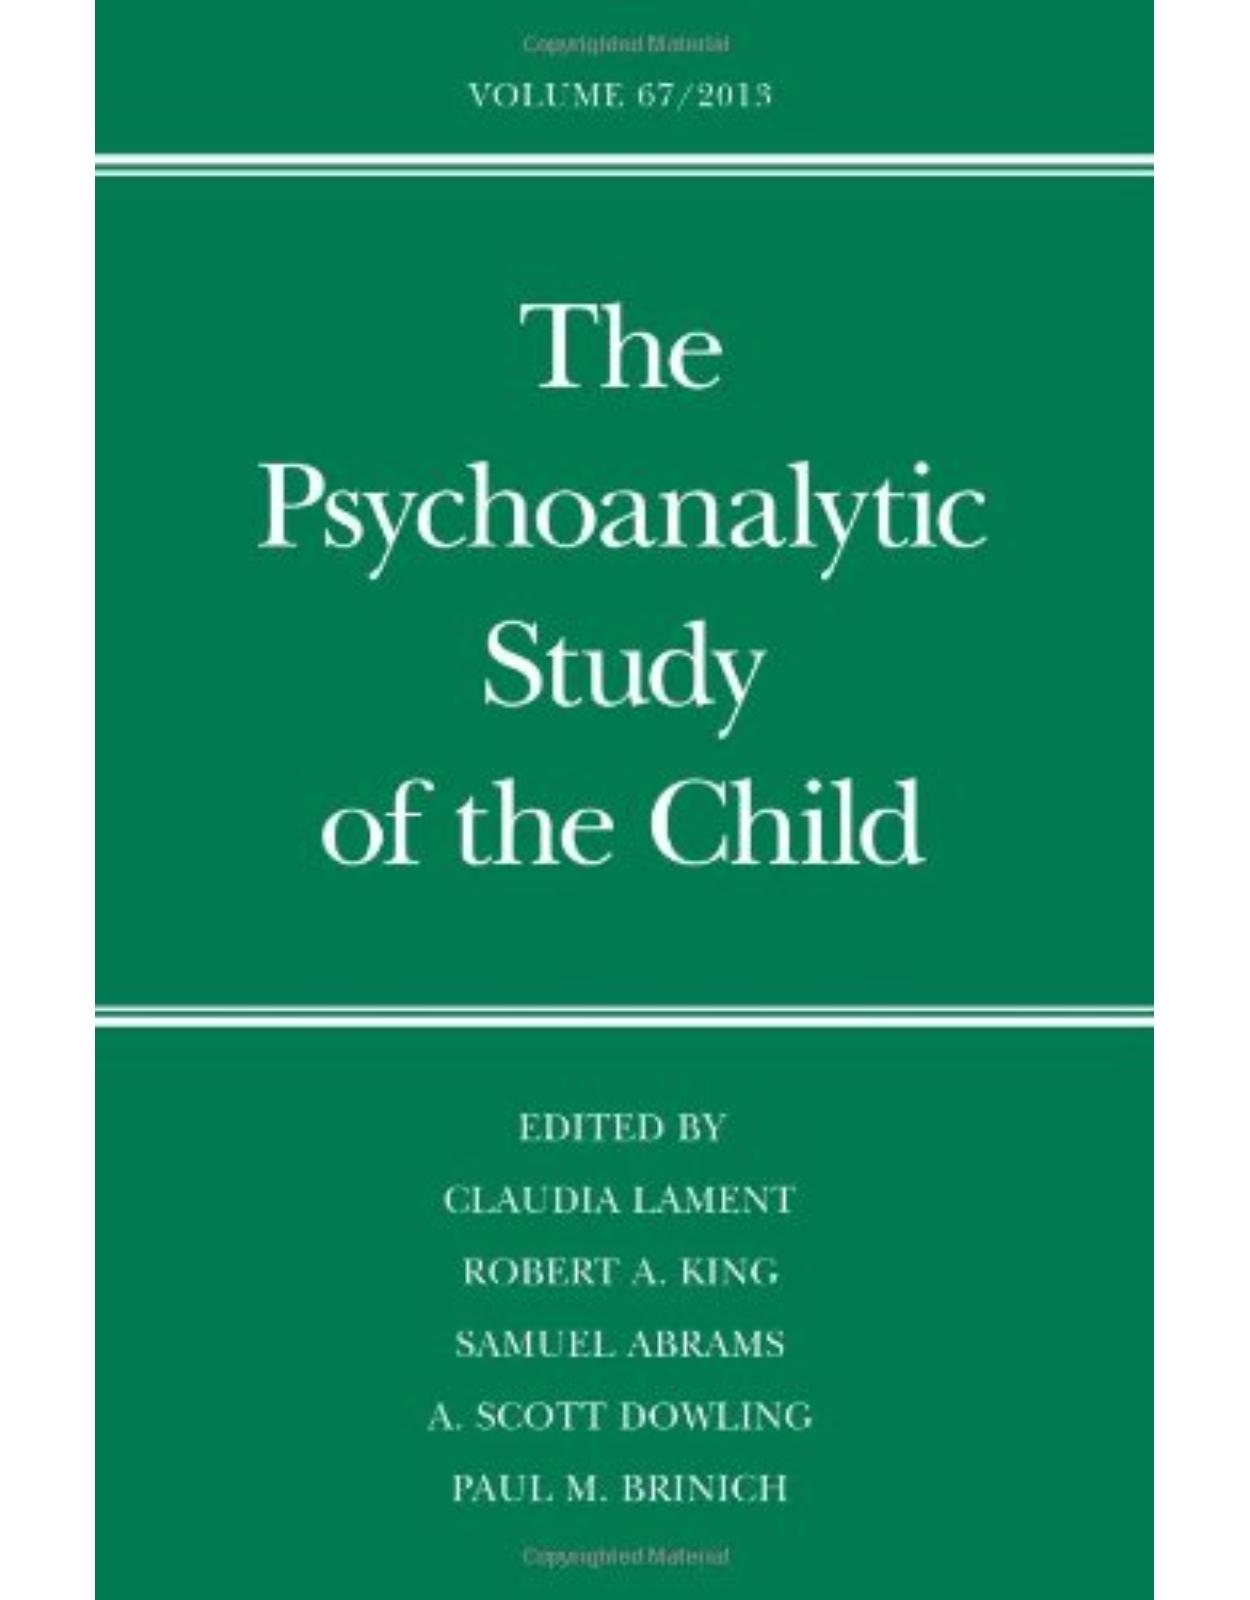 Psychoanalytic Study of the Child. Volume 67